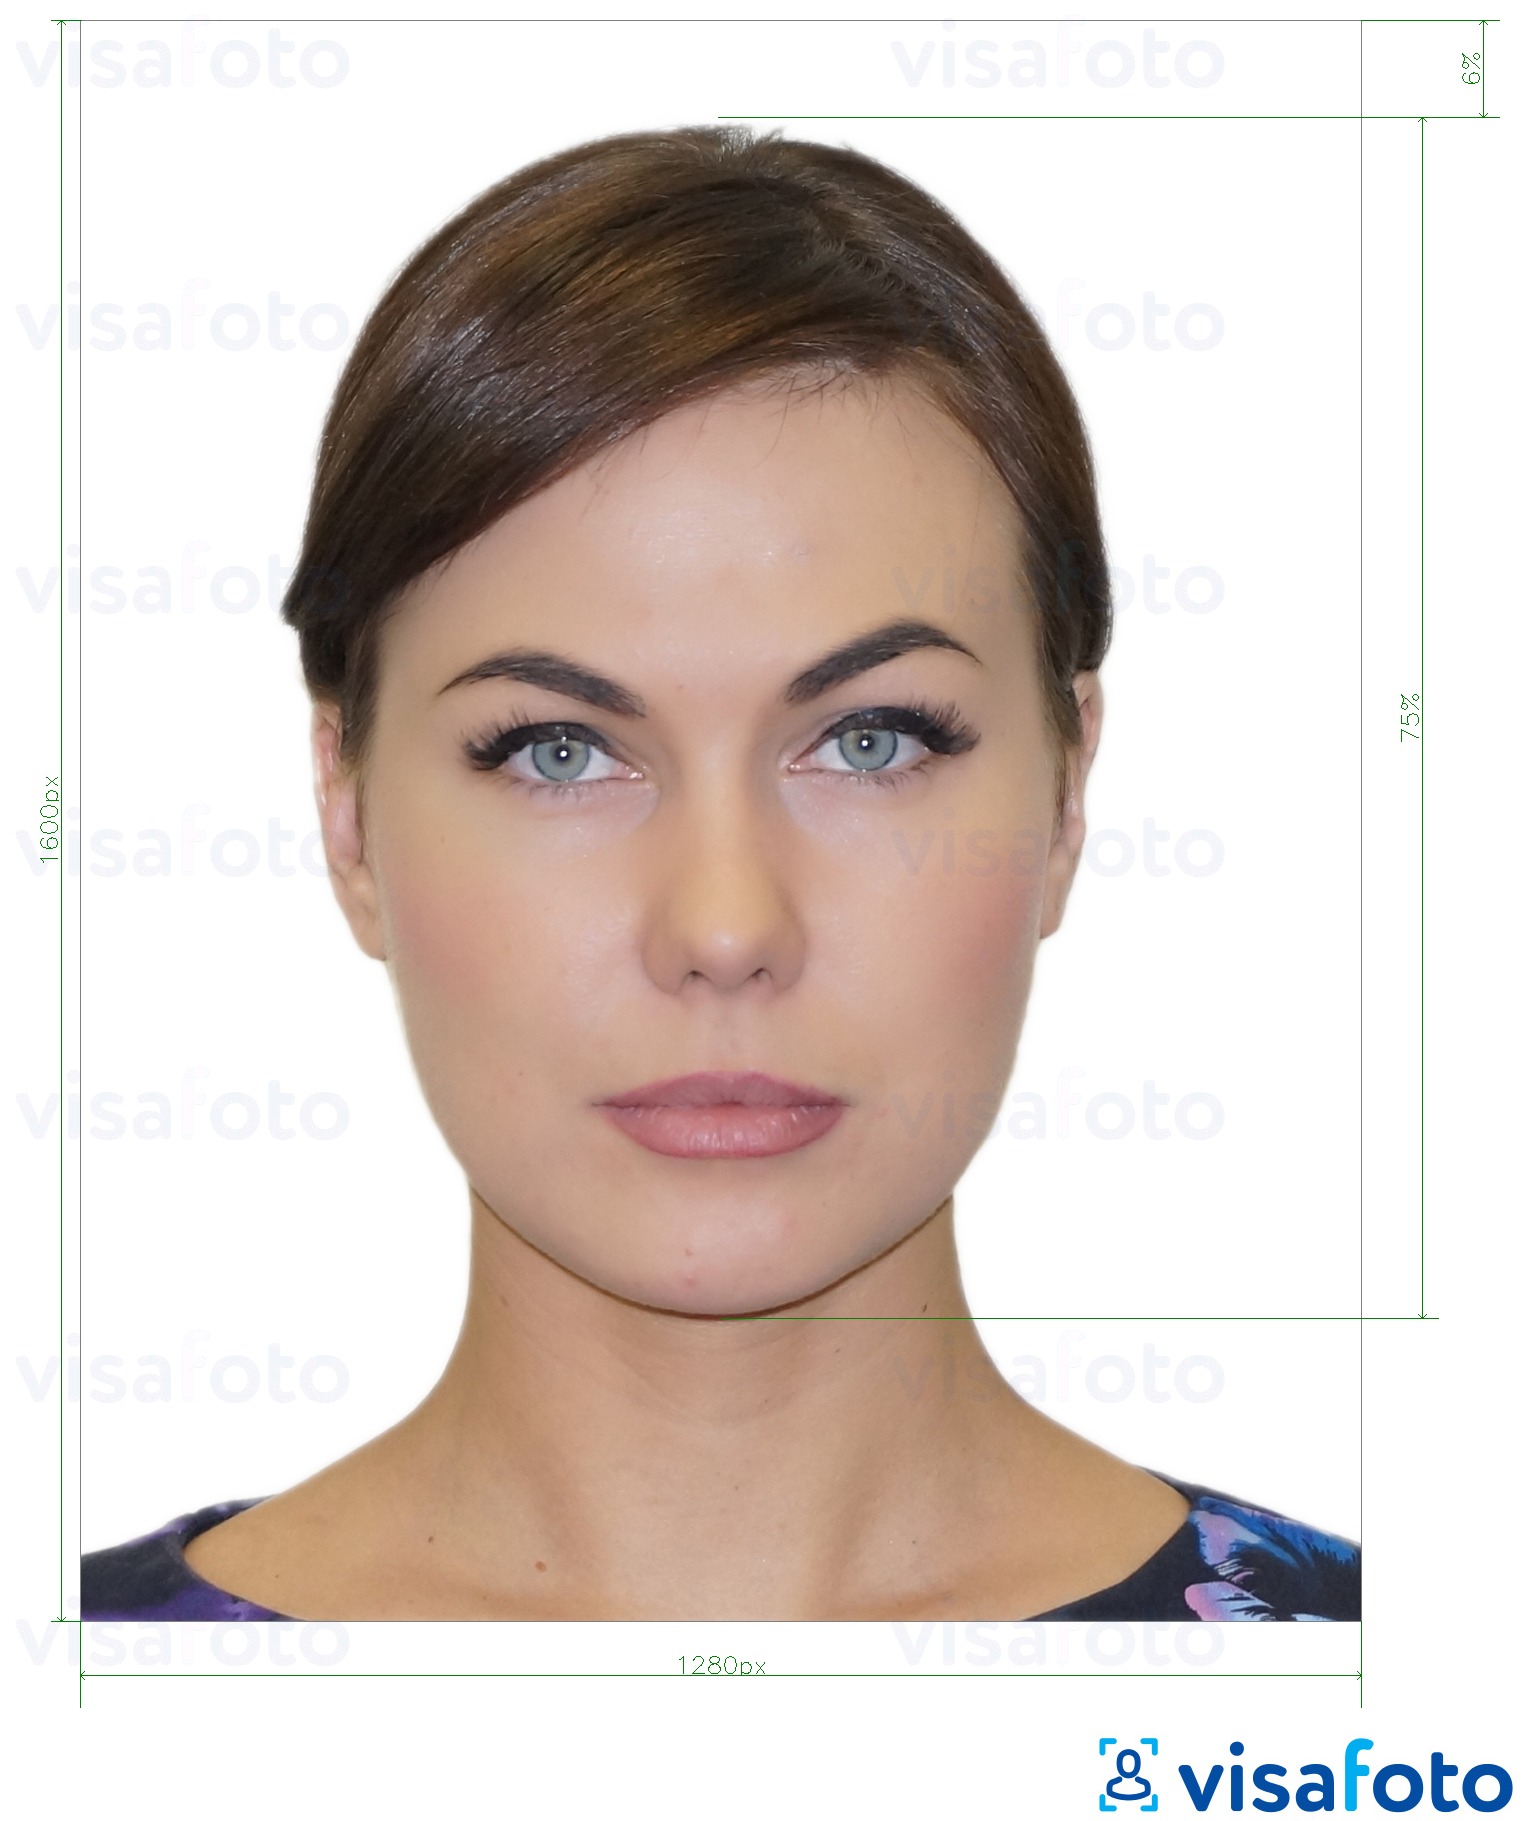 Ejemplo de foto para Licencia de conducir de Grecia 1280x1600 píxeles con la especificación del tamaño exacto